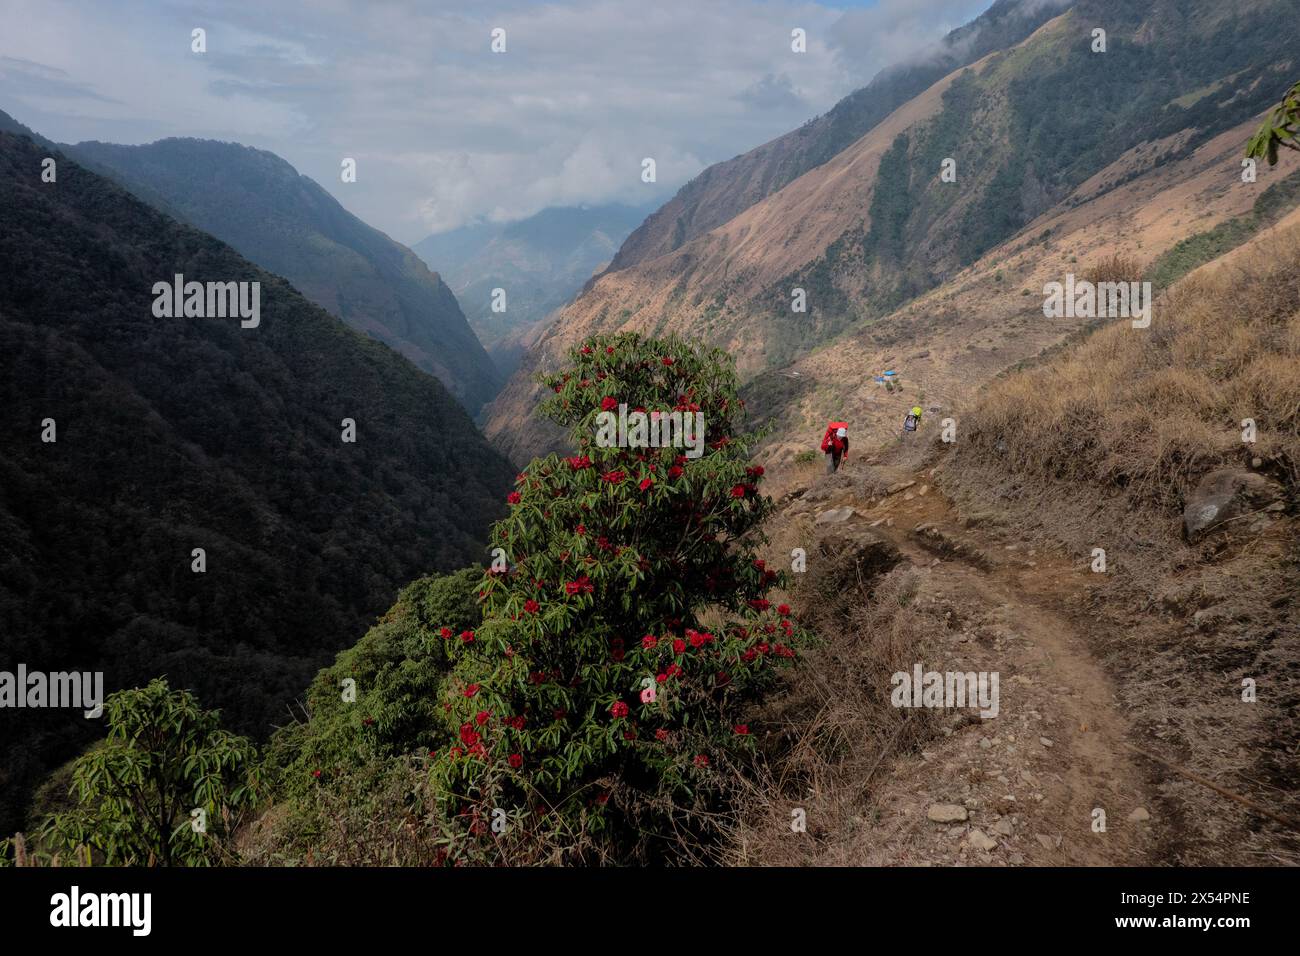 Rhododendron blooms on the way to Kangchanjunga Base Camp, Sekethum, Nepal Stock Photo